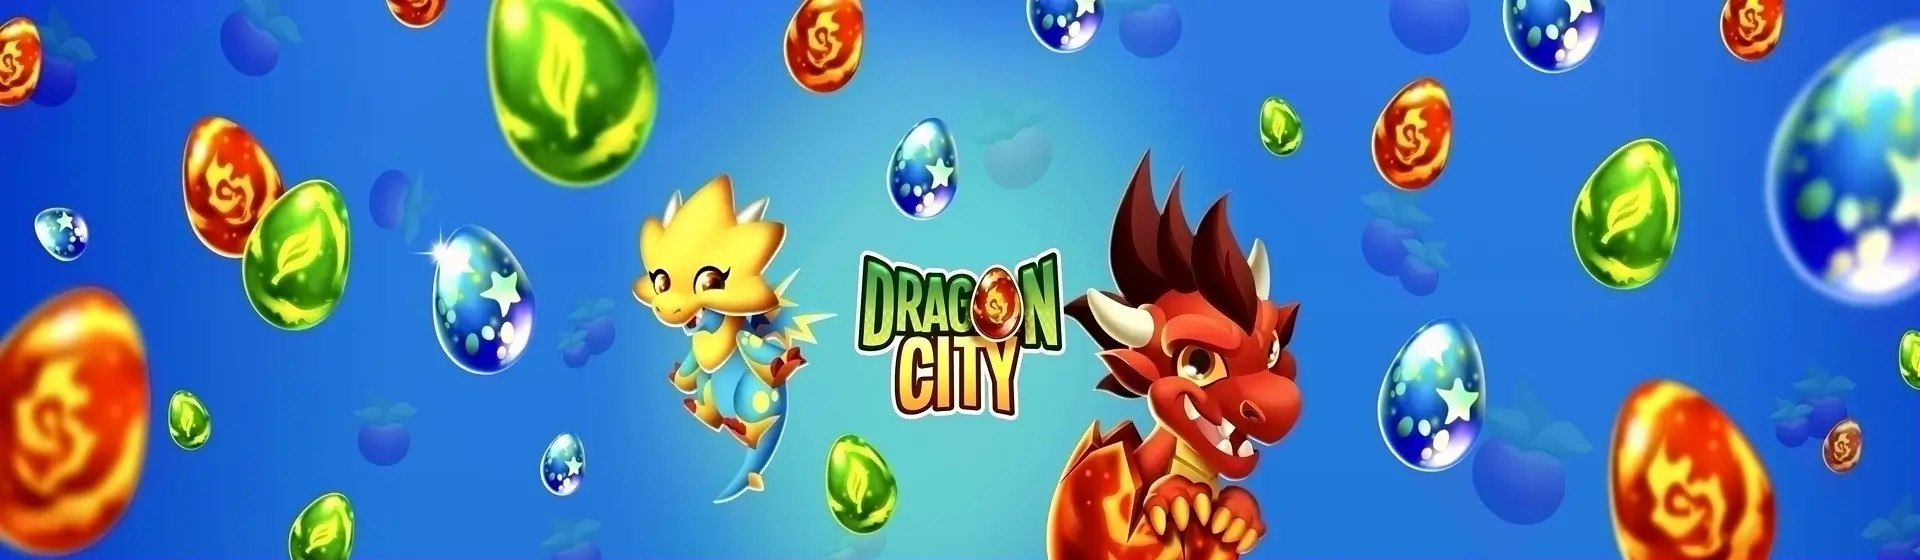 Tải Dragon City (Thành Phố Rồng) trên PC với giả lập - LDPlayer